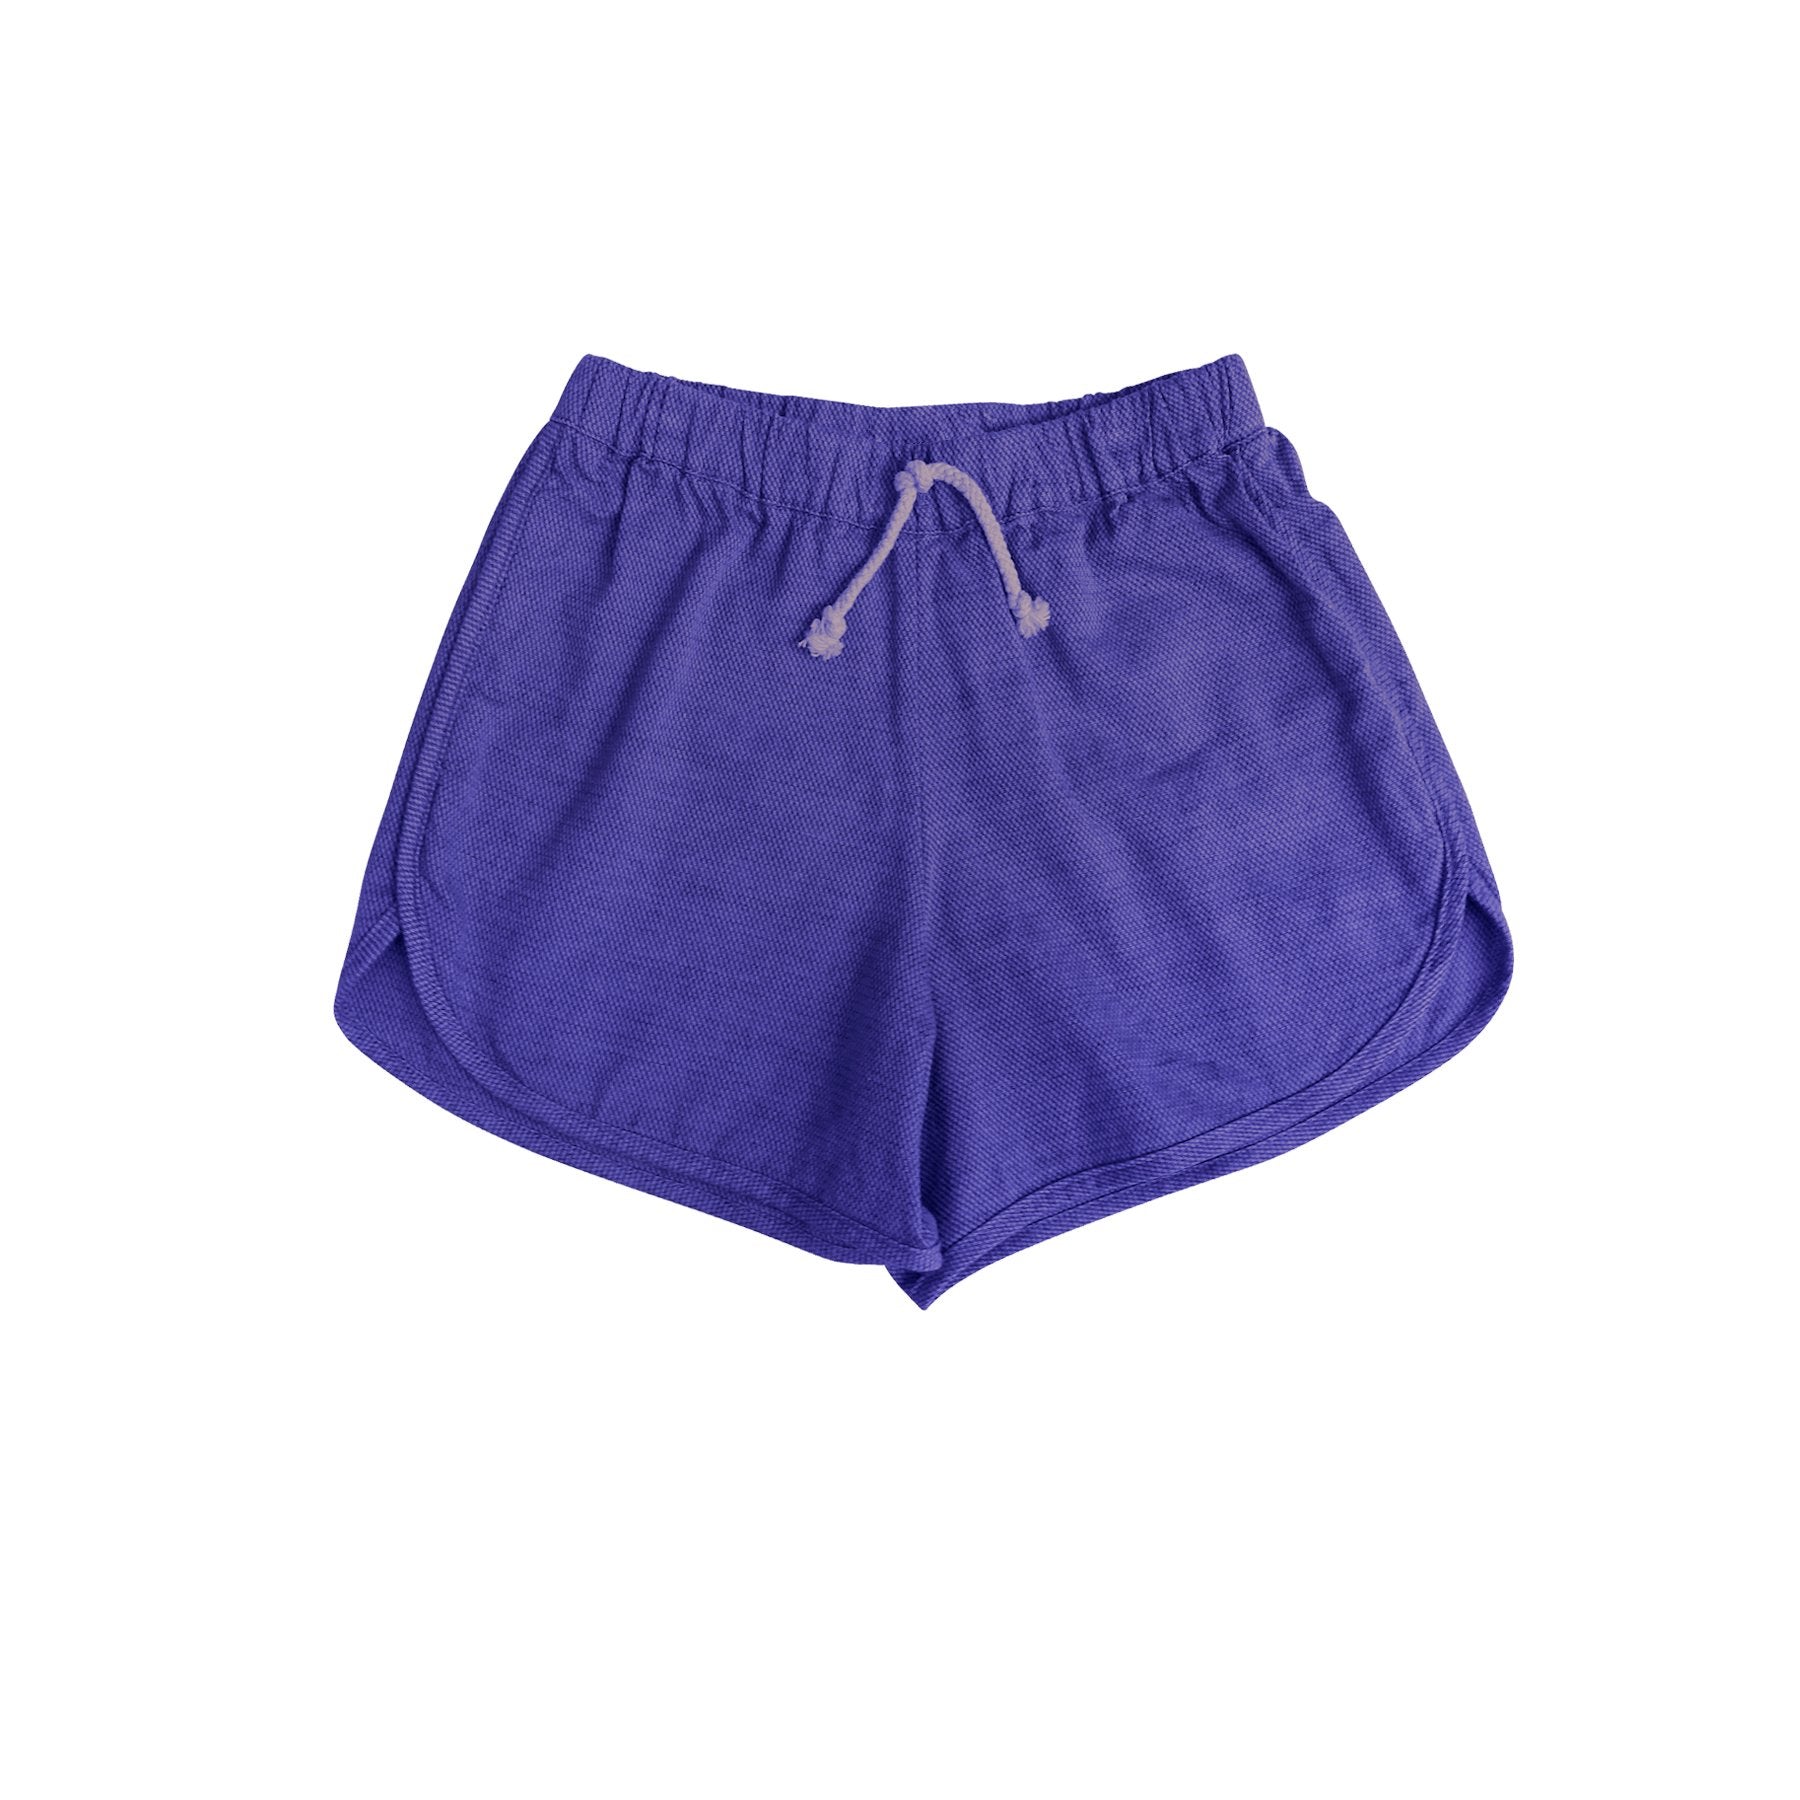 2 bundle shorts, both sz L, purple one no longer has